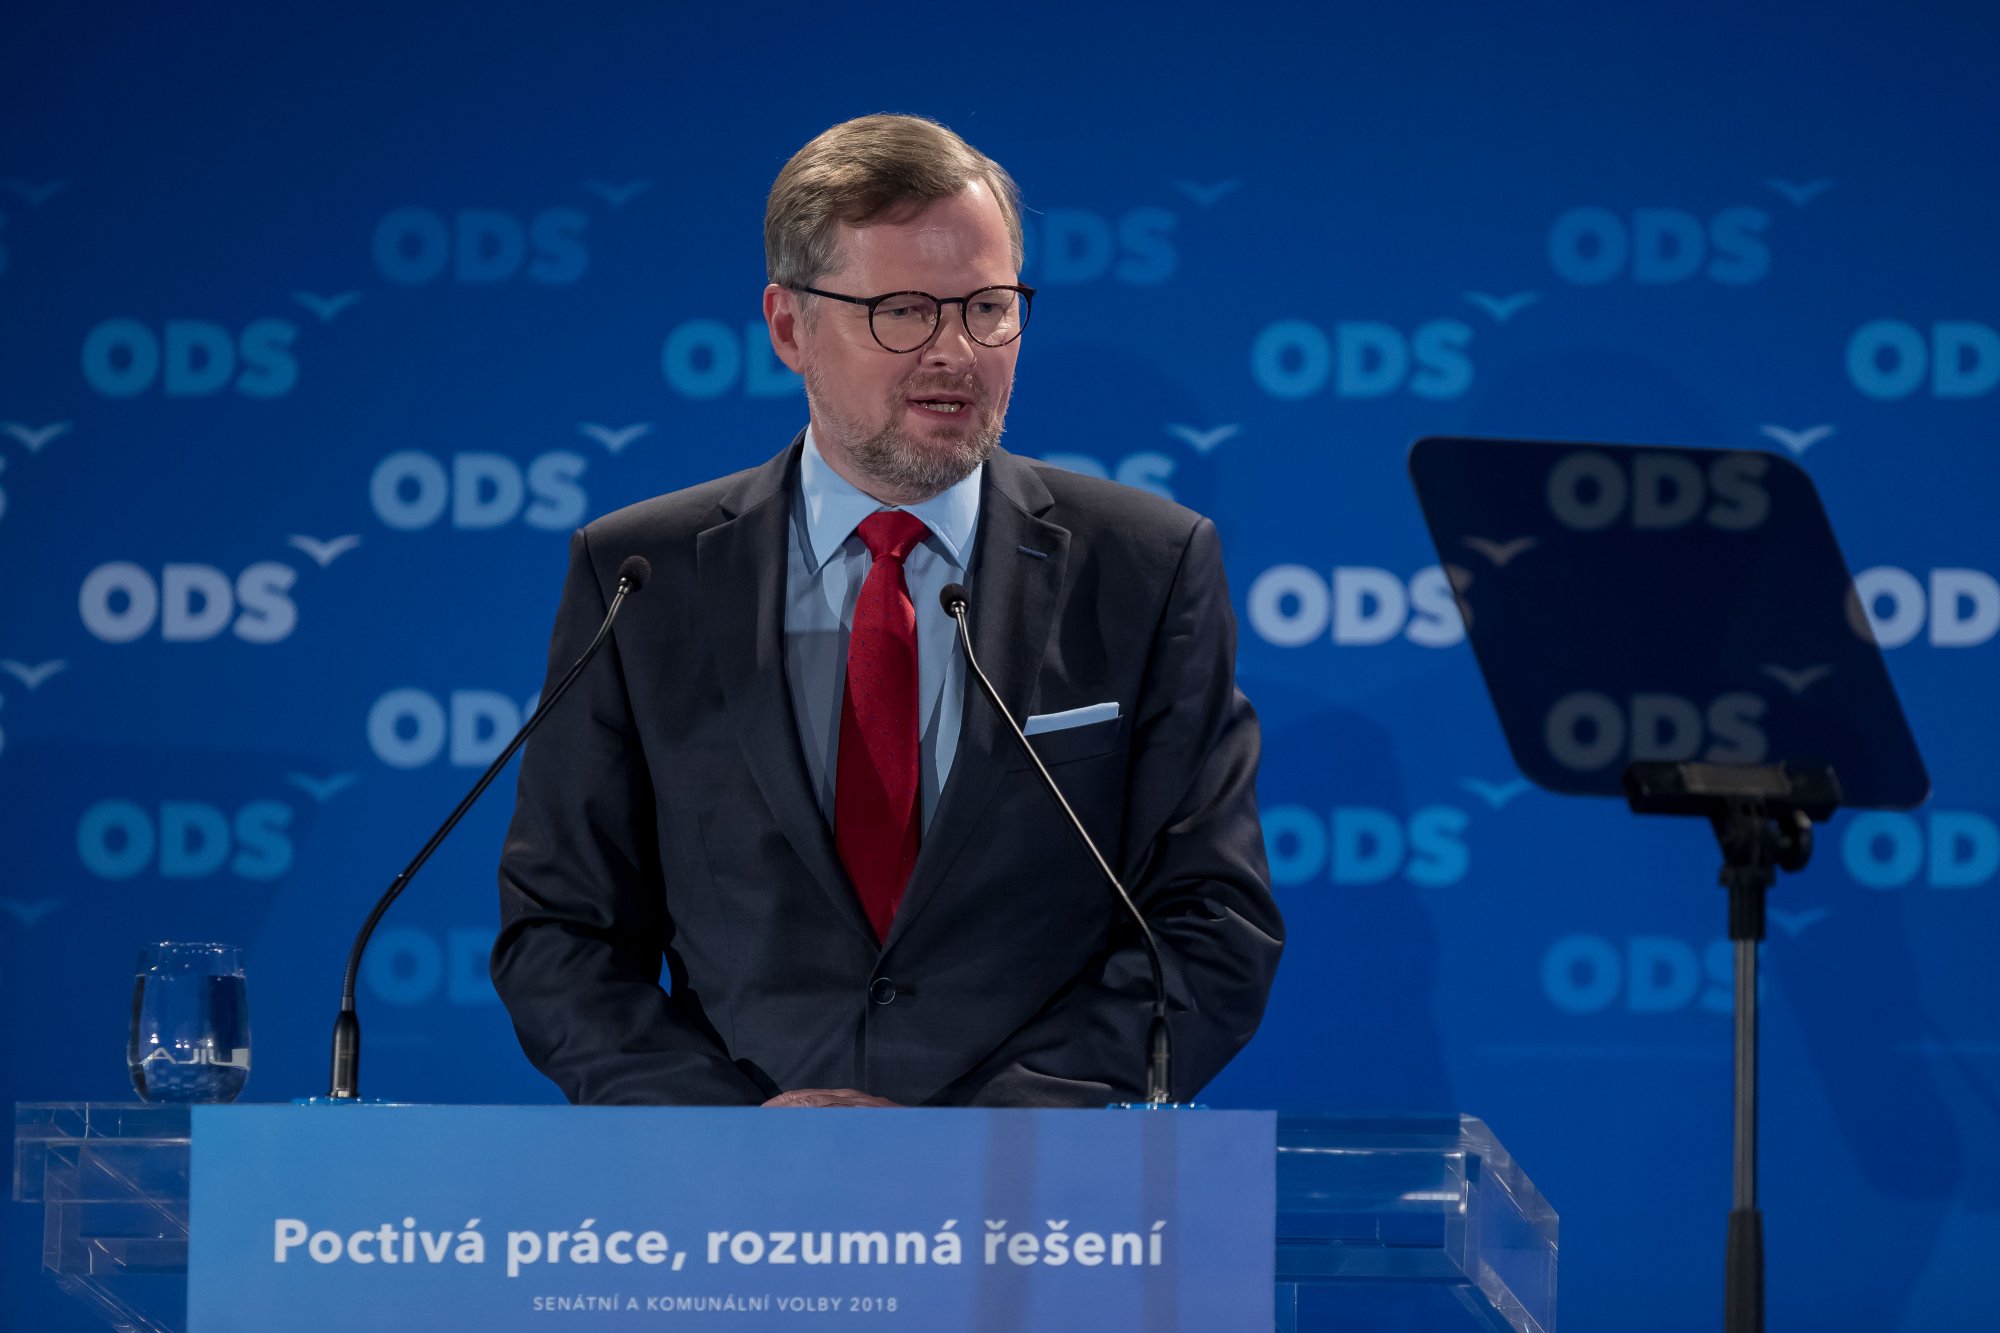 ODS: Selhání vlády. Koalice ANO, ČSSD a KSČM odmítla snížit byrokracii malým podnikatelům